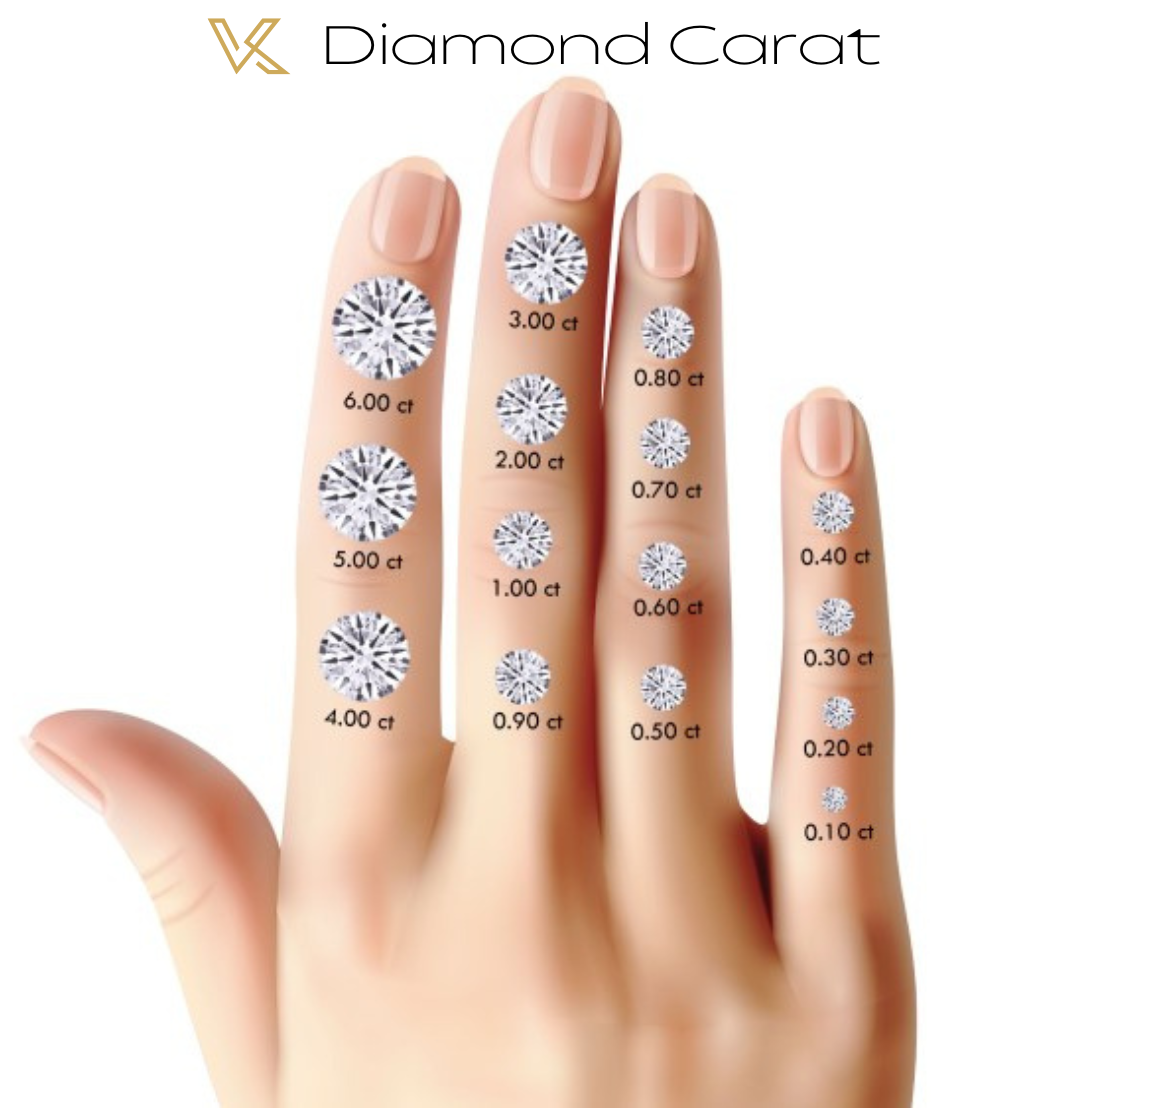 Buy Loose Diamond 1.01 Carat. E VVS2 - Round Cut. Lab-Grown Diamond